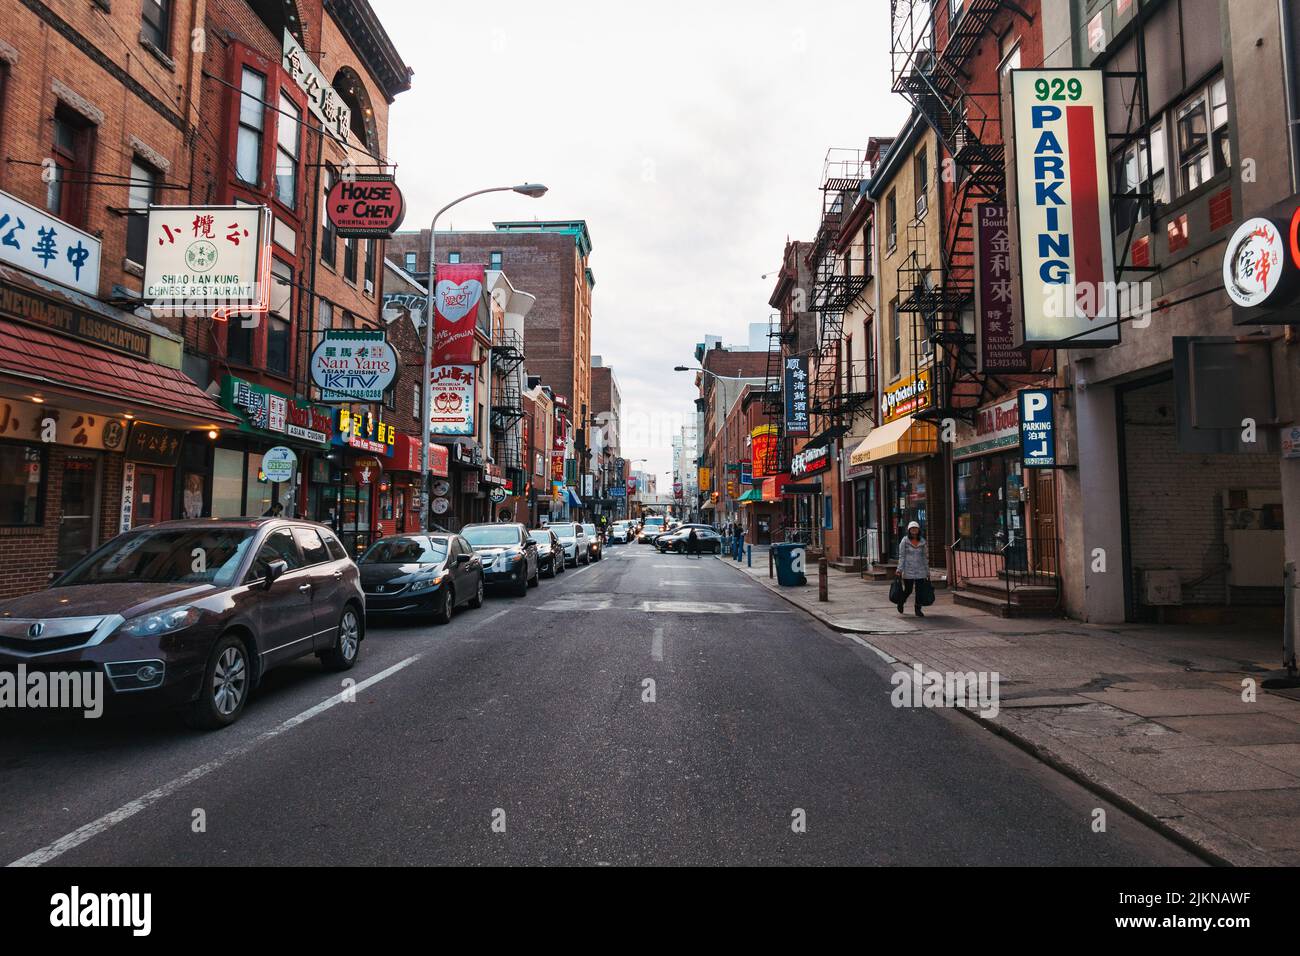 Vue sur une rue de la ville dans Chinatown, Philadelphie, USA Banque D'Images